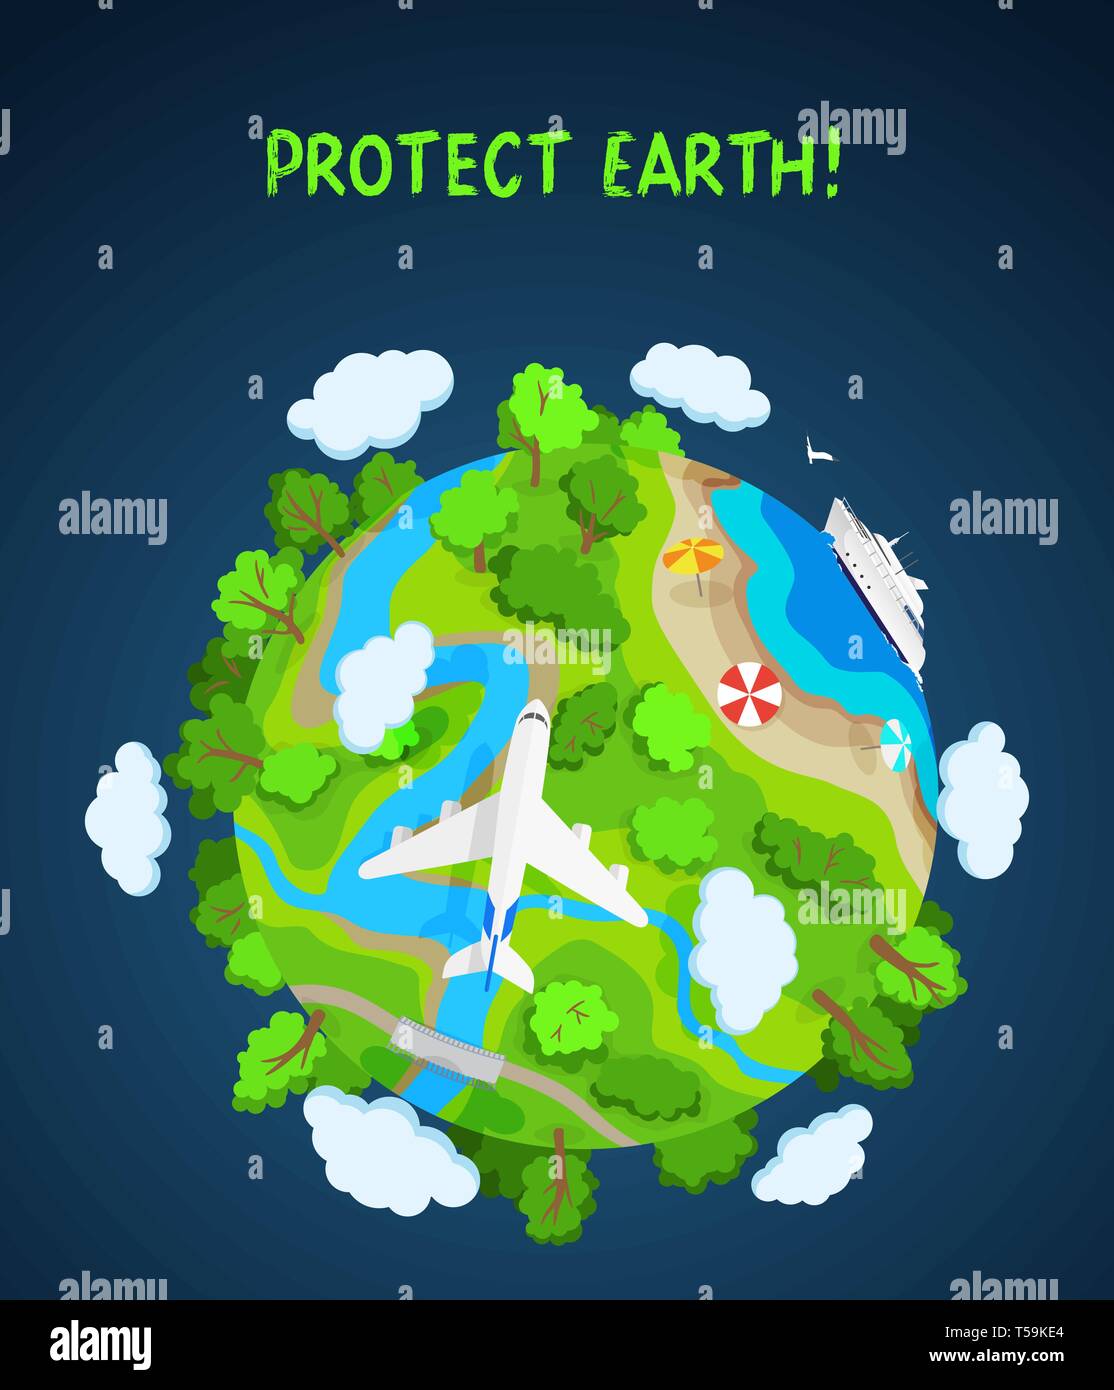 Erde schützen Konzept, Planet Erde mit Bäumen, Flüssen und Wolken Stock Vektor